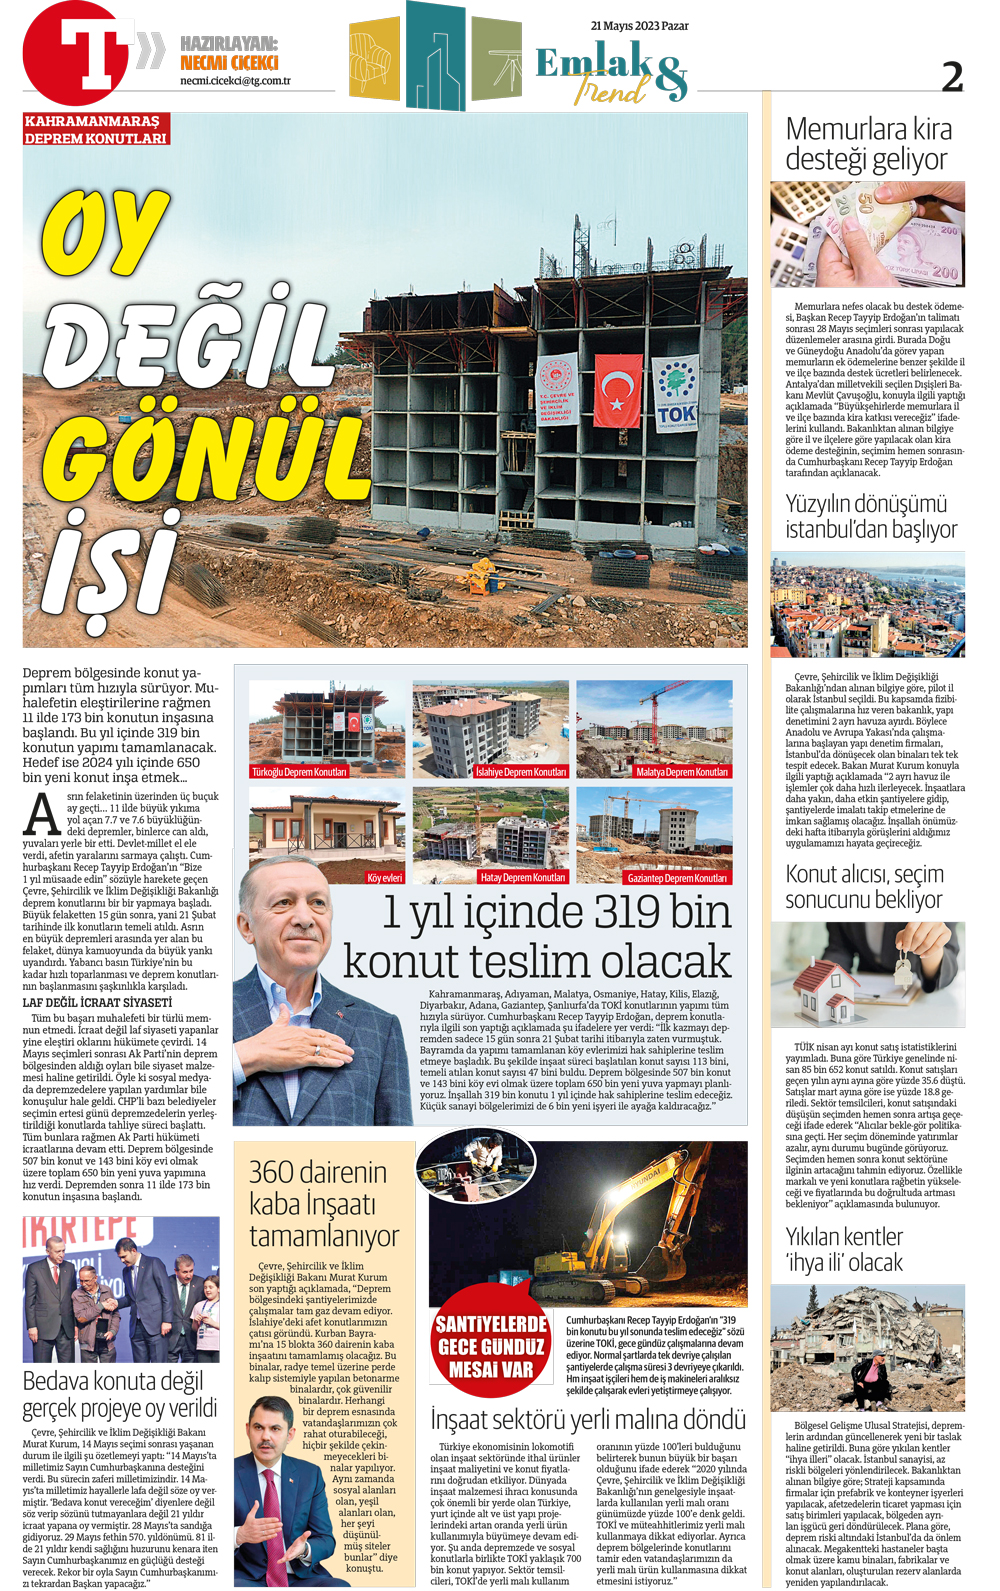 necmi çiçekçi türkiye gazetesi emlak trend sayfası